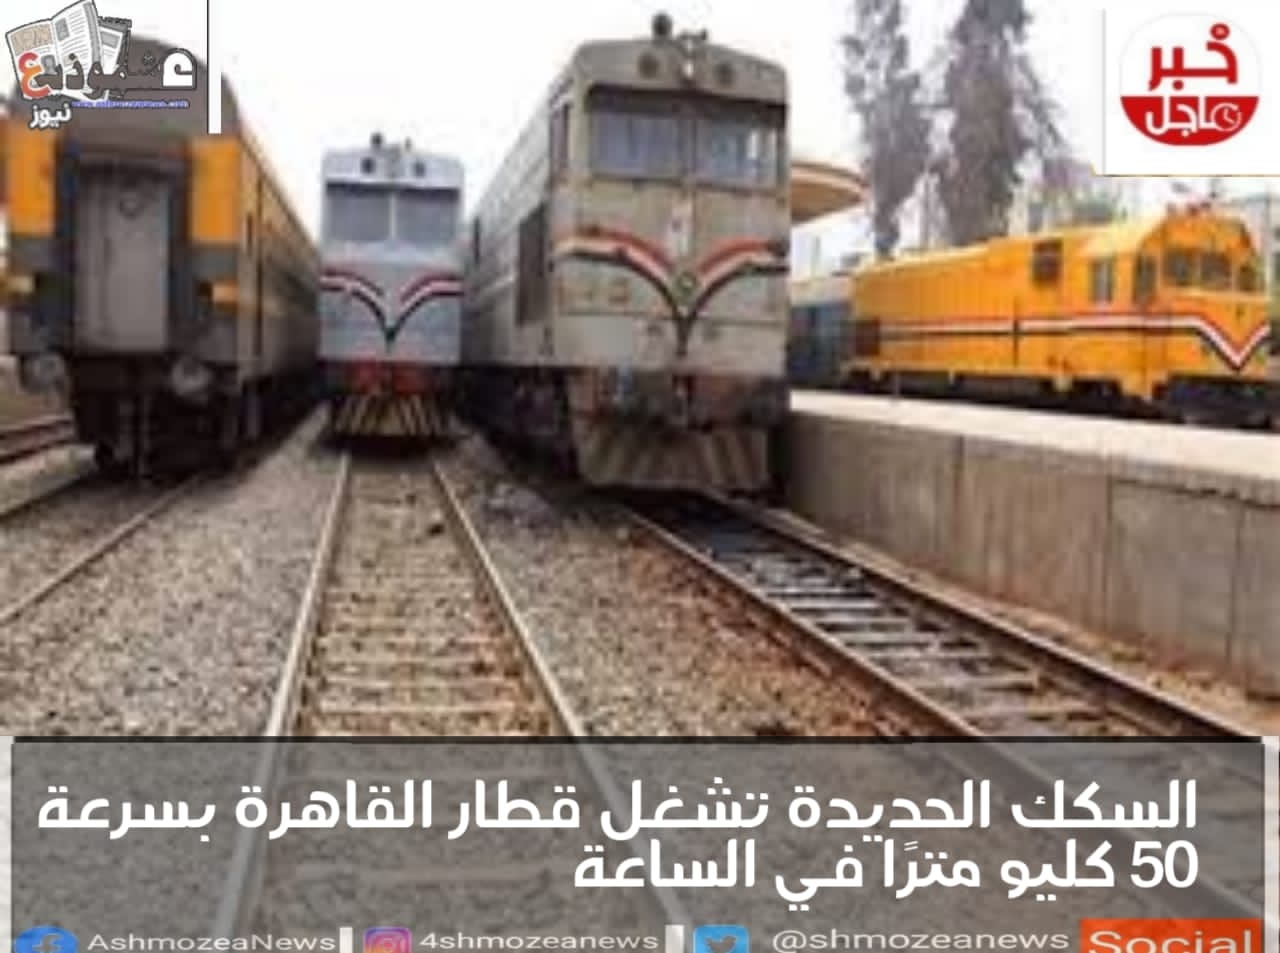 السكك الحديدة تشغل قطار القاهرة بسرعة 50 كليو مترًا في الساعة